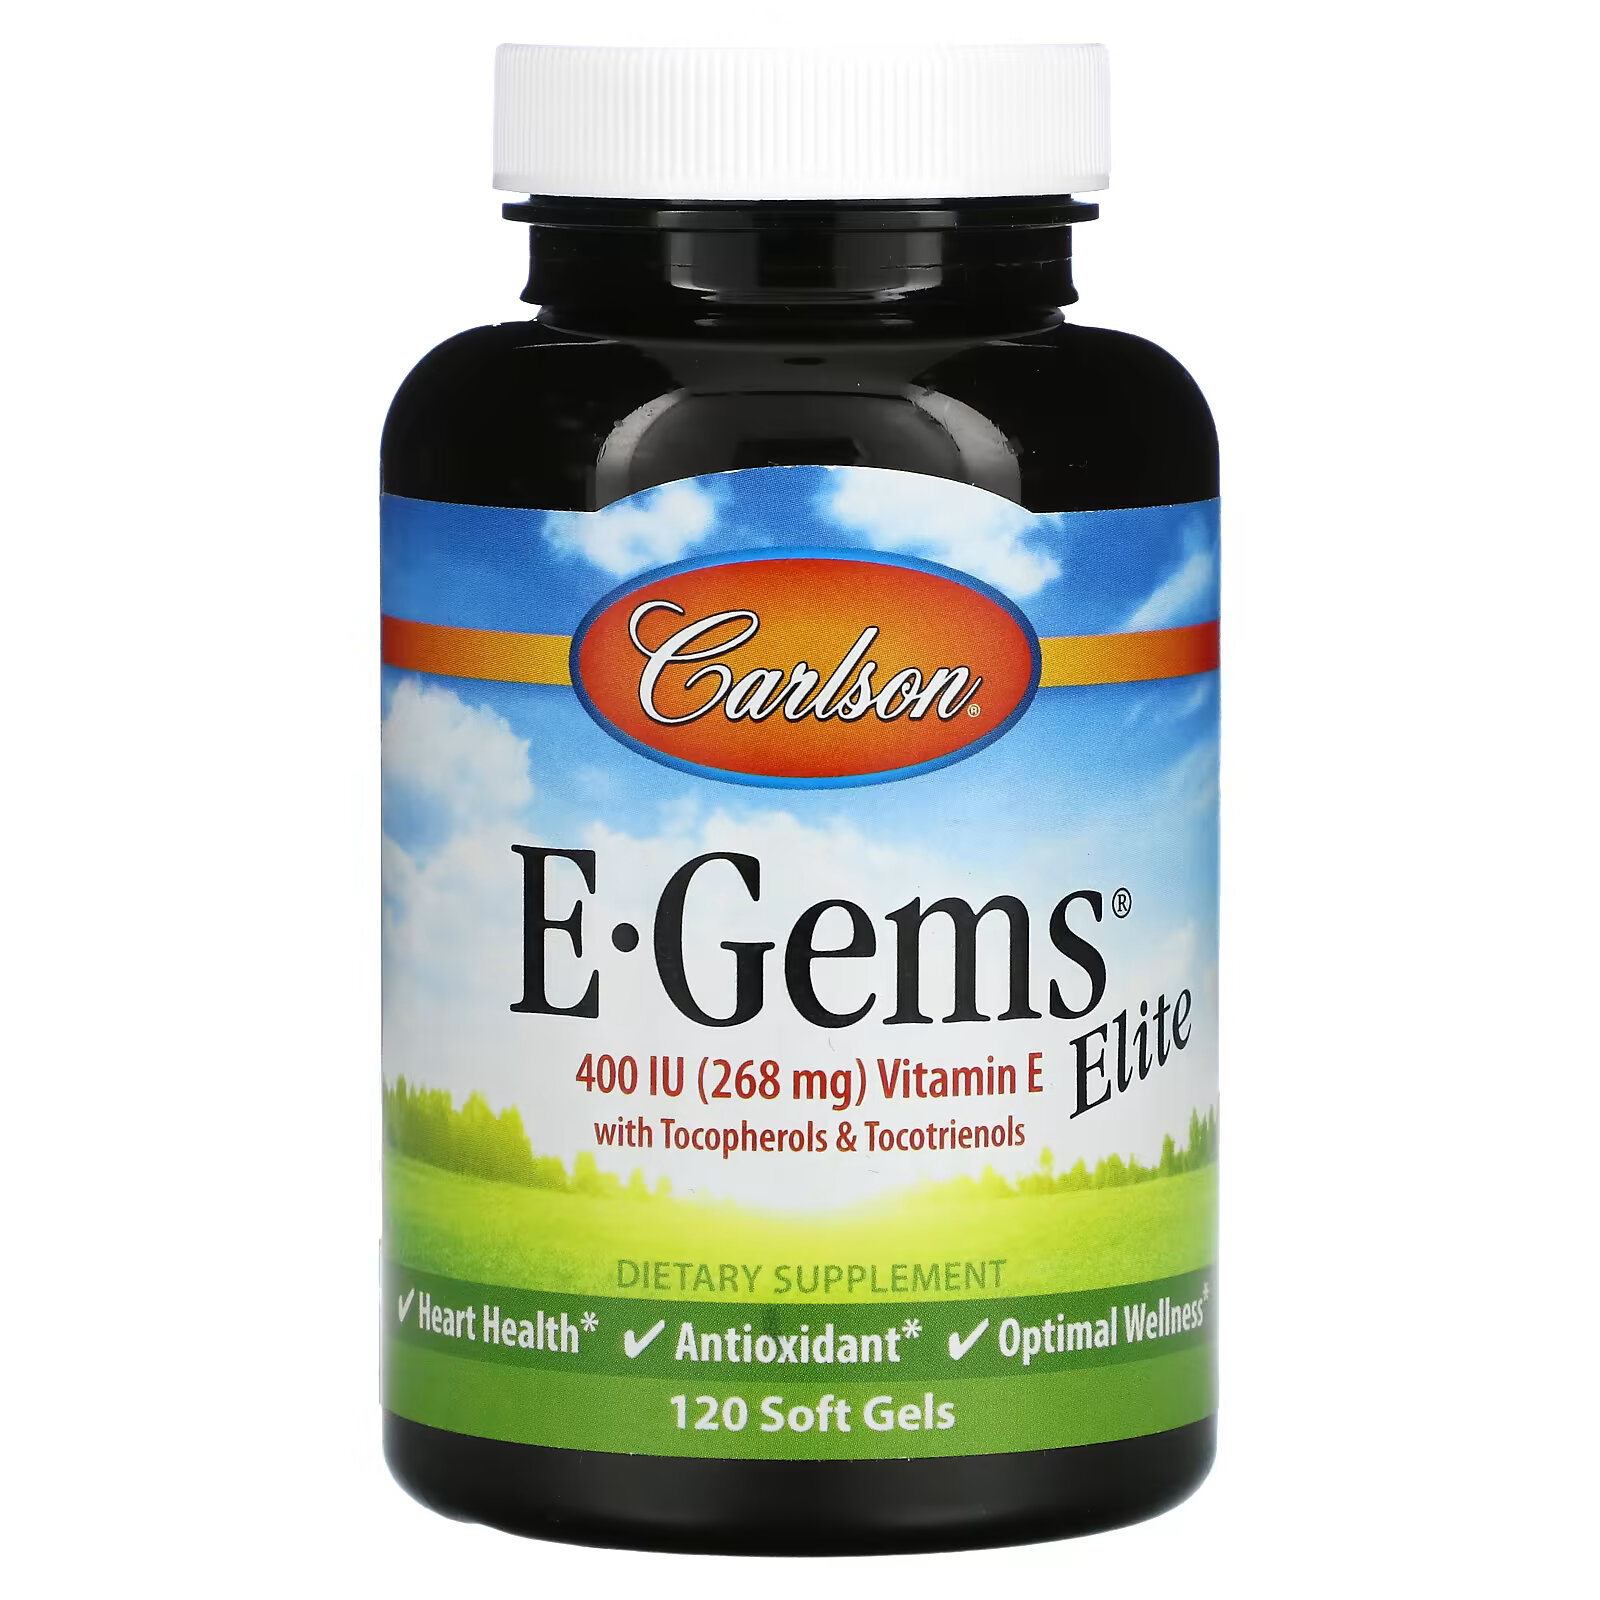 Carlson, E-Gems Elite, витамин E, 268 мг (400 МЕ), 120 мягких таблеток carlson e gems 268 мг 400 ме 90 мягких таблеток